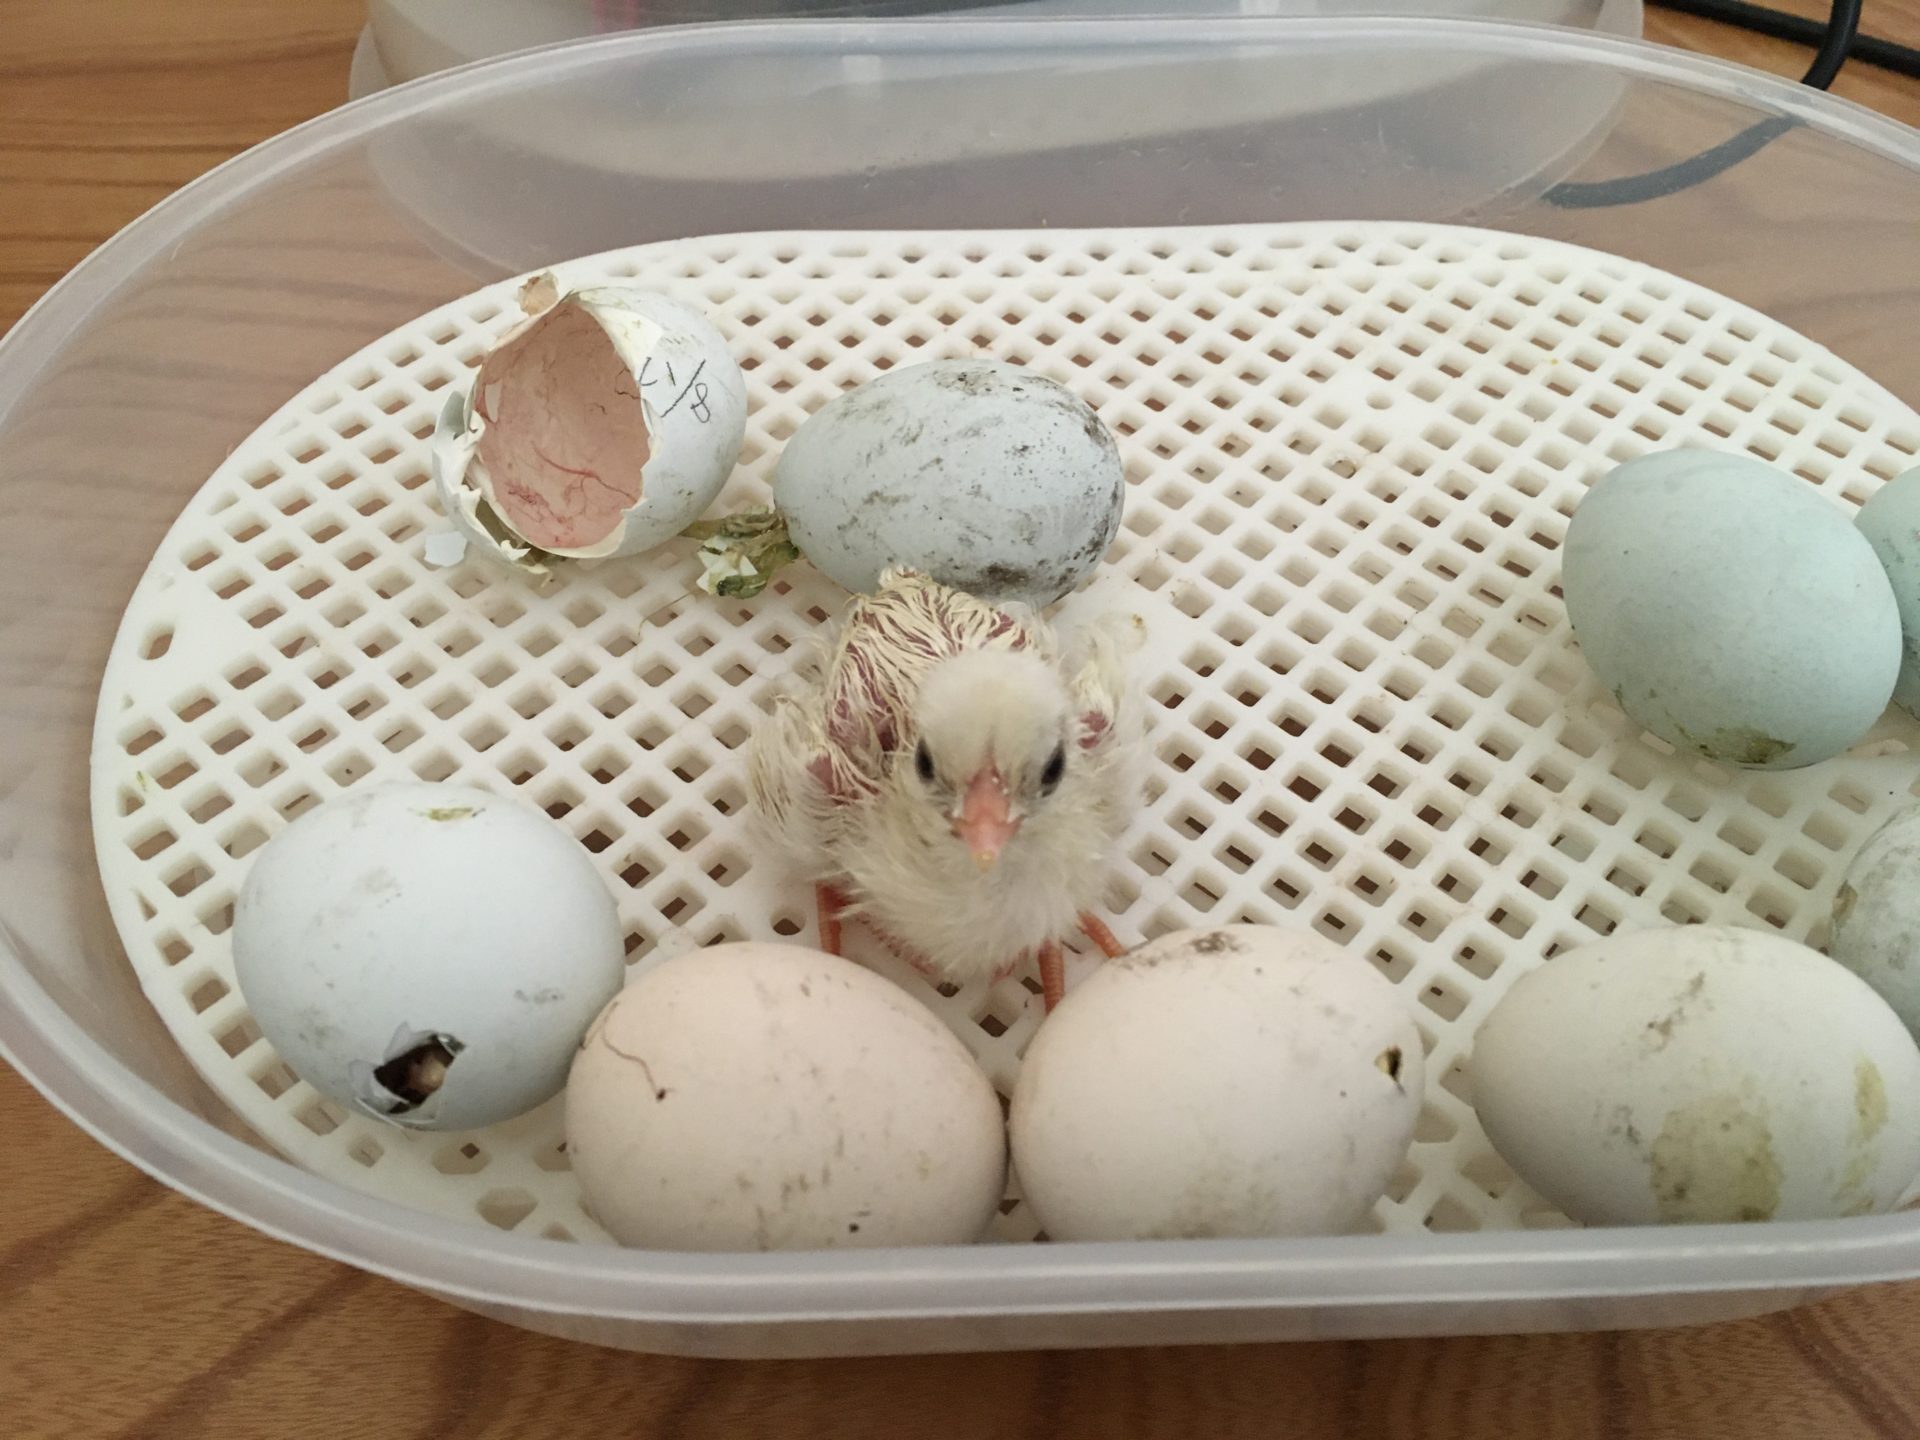 我が家のニワトリ 150 孵卵器にセットしていたアローカナの卵から雛が孵化しました 前編 雨がやんだら裏庭に